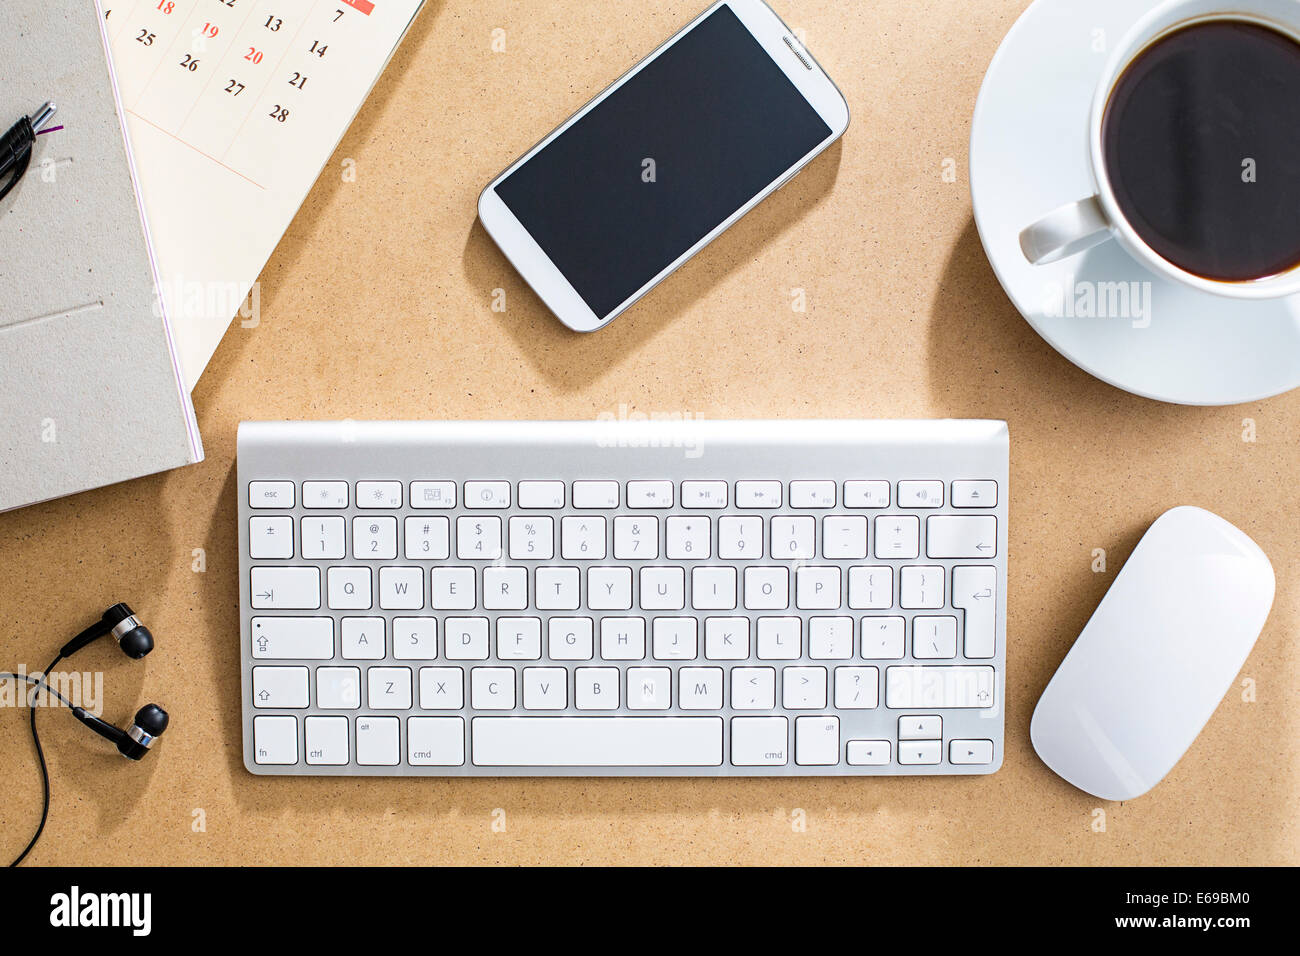 Kabellose Tastatur, Maus und Handy auf Tisch Stockfotografie - Alamy